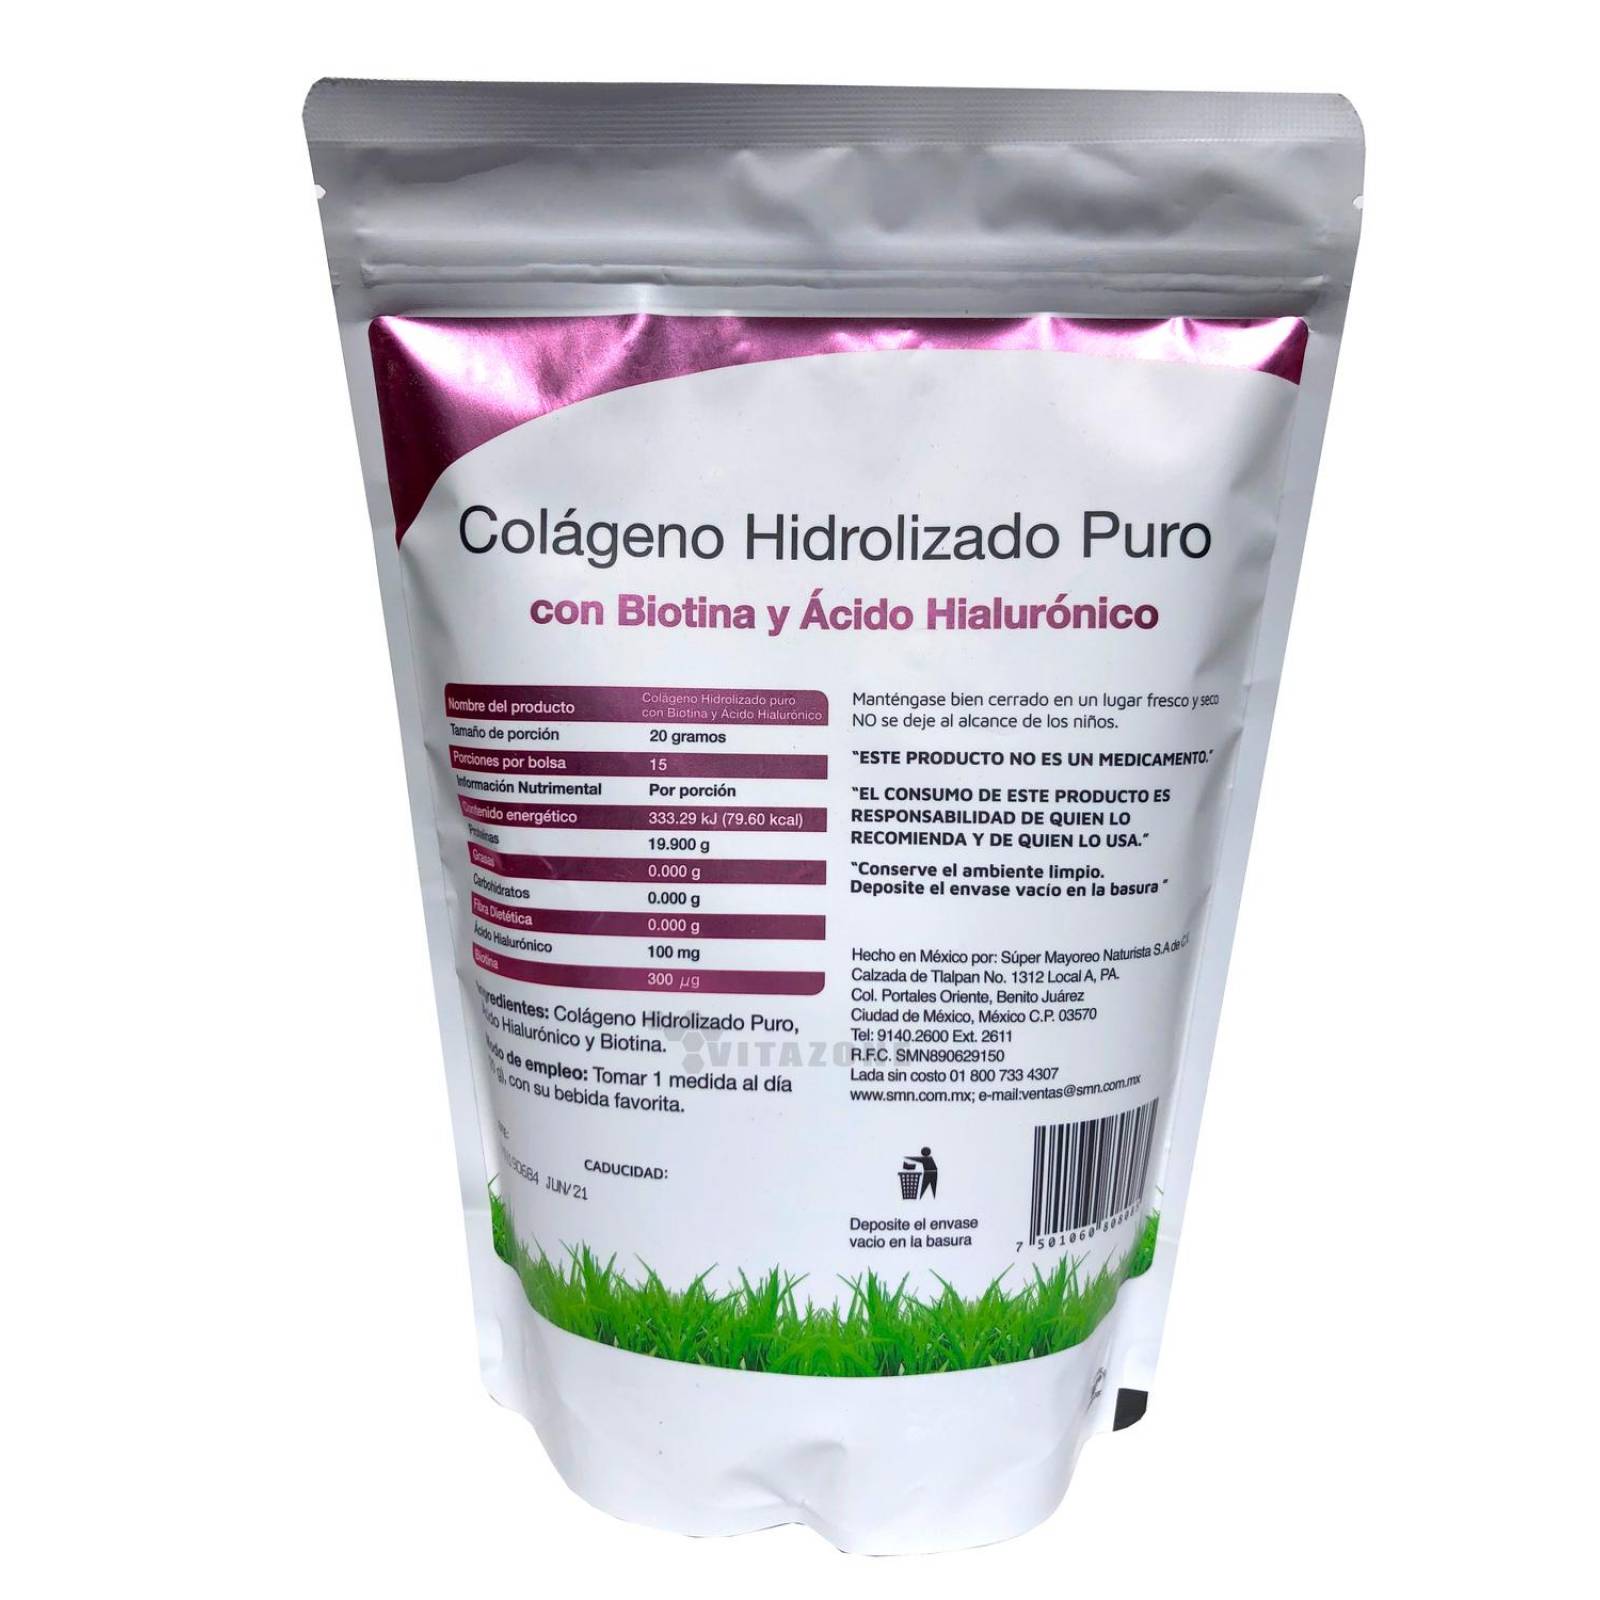 Colágeno Hidrolizado Puro, Biotina, Acido Hialurónico (3 Bolsas) de 300 grs 